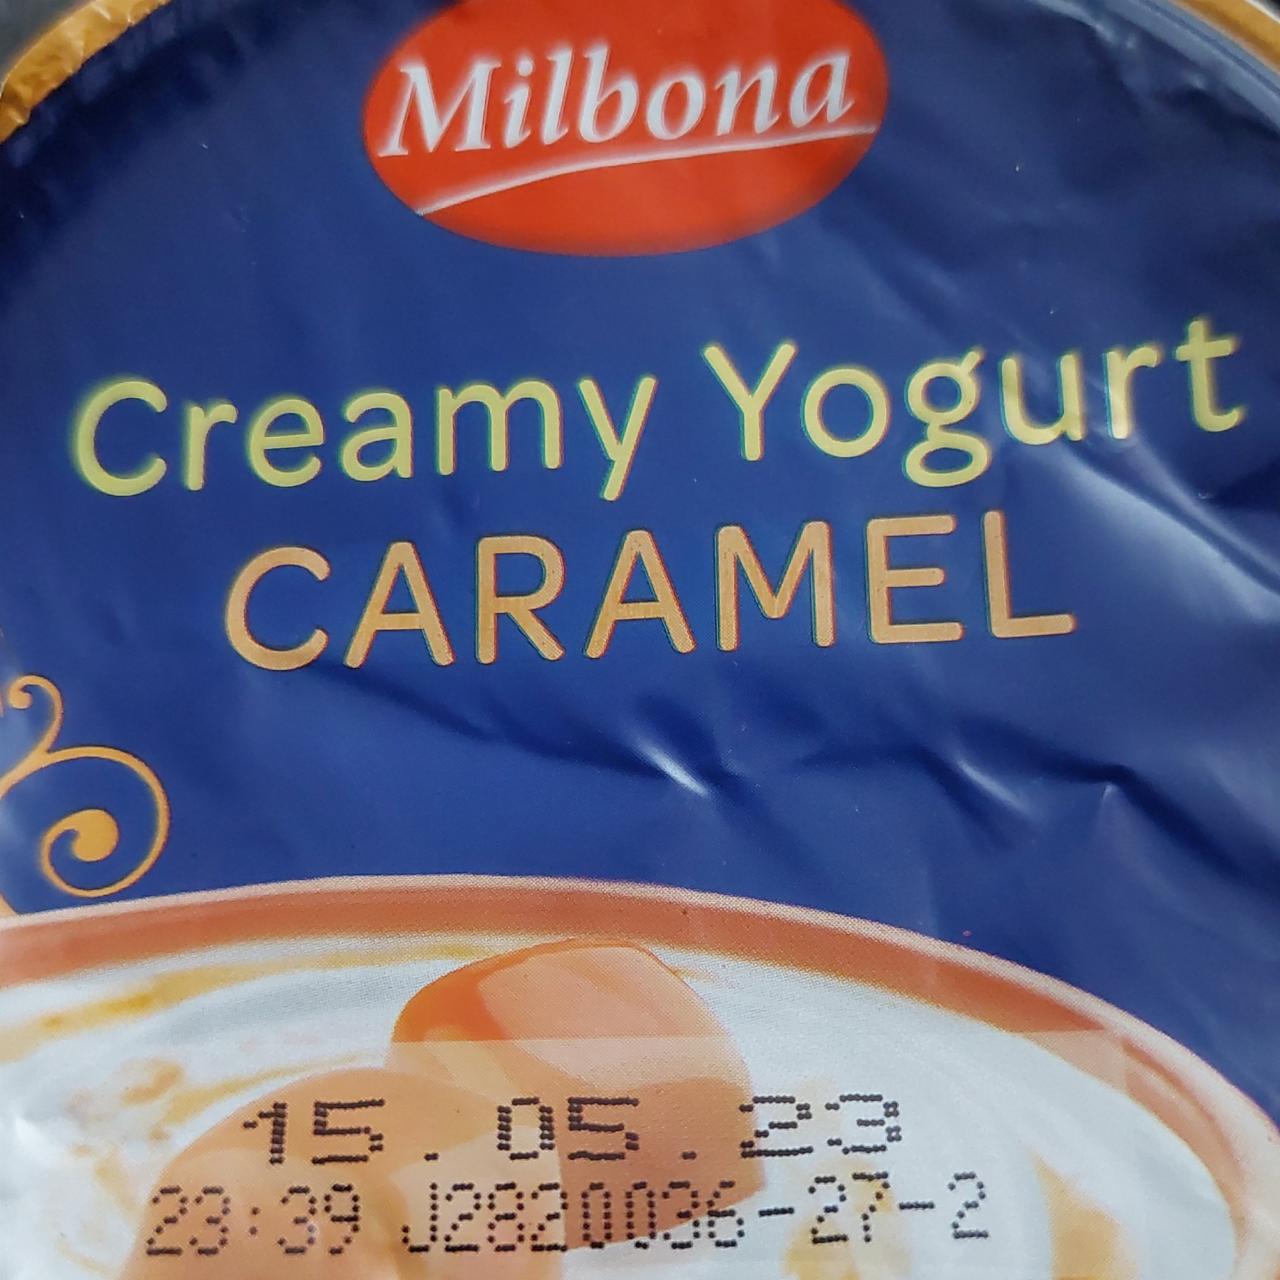 Фото - кремовый йогурт карамельный Milbona